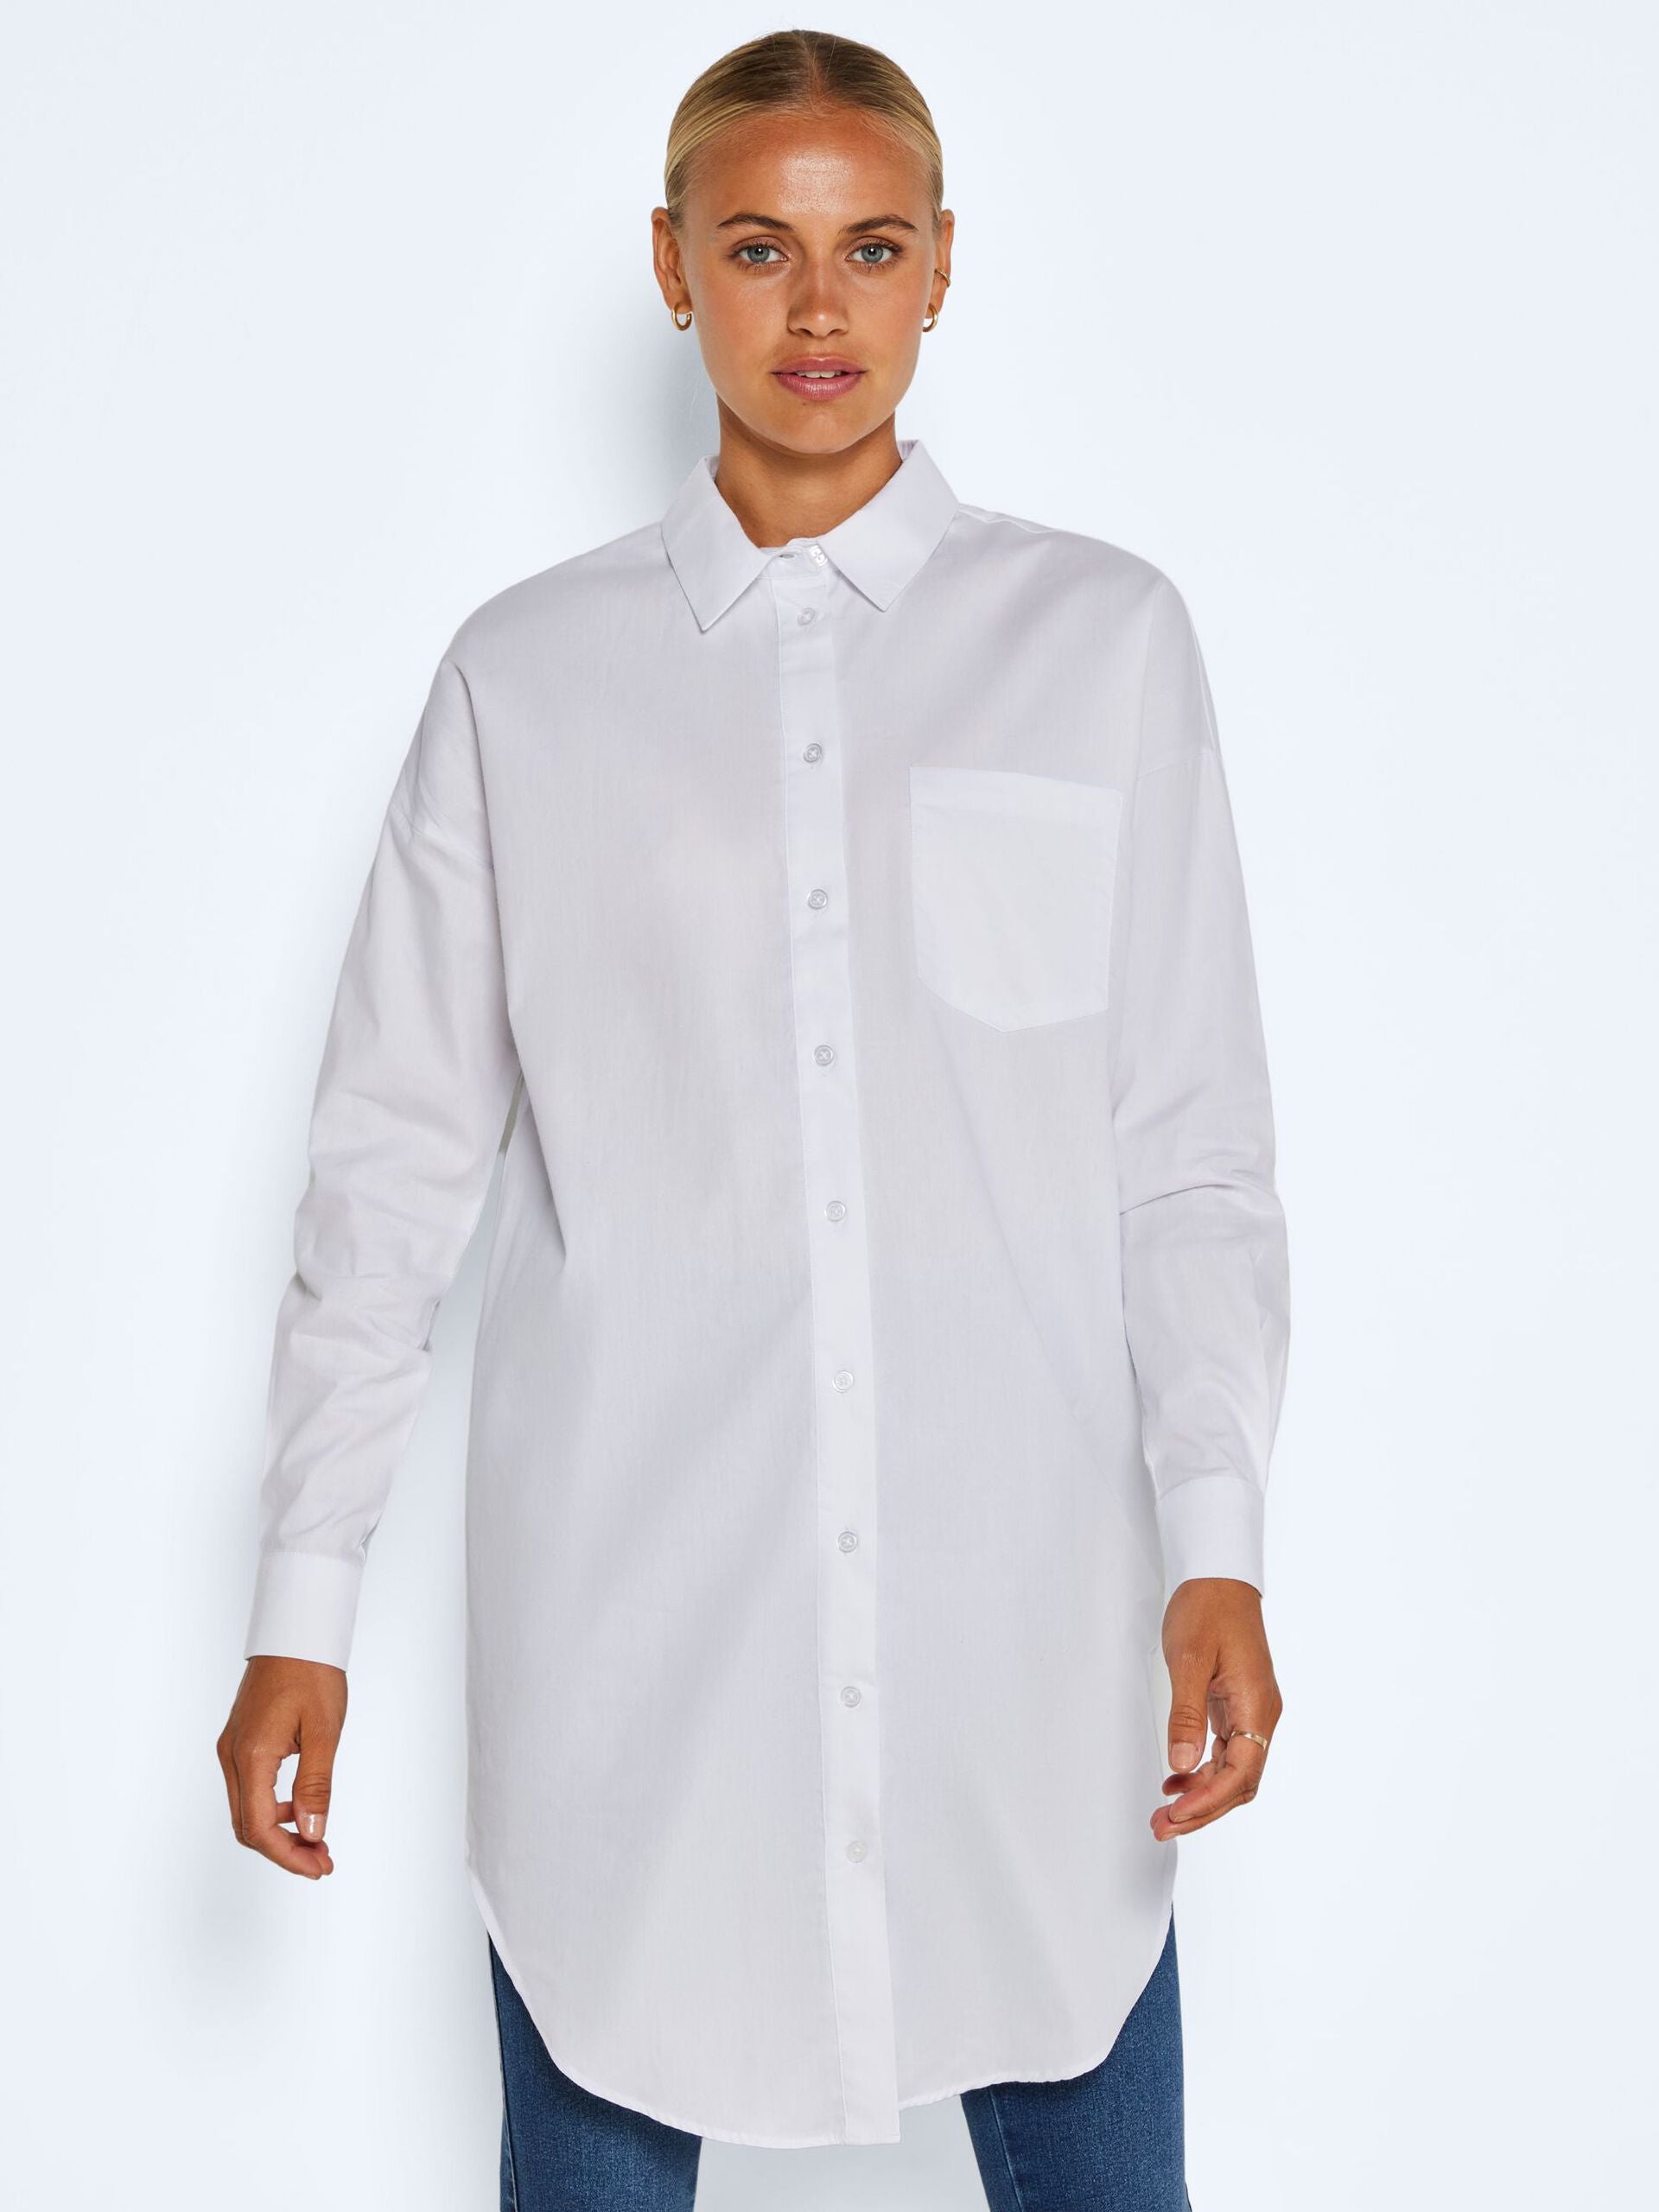 NOISY MAY WHITE SHIRT DRESS FOR WOMEN